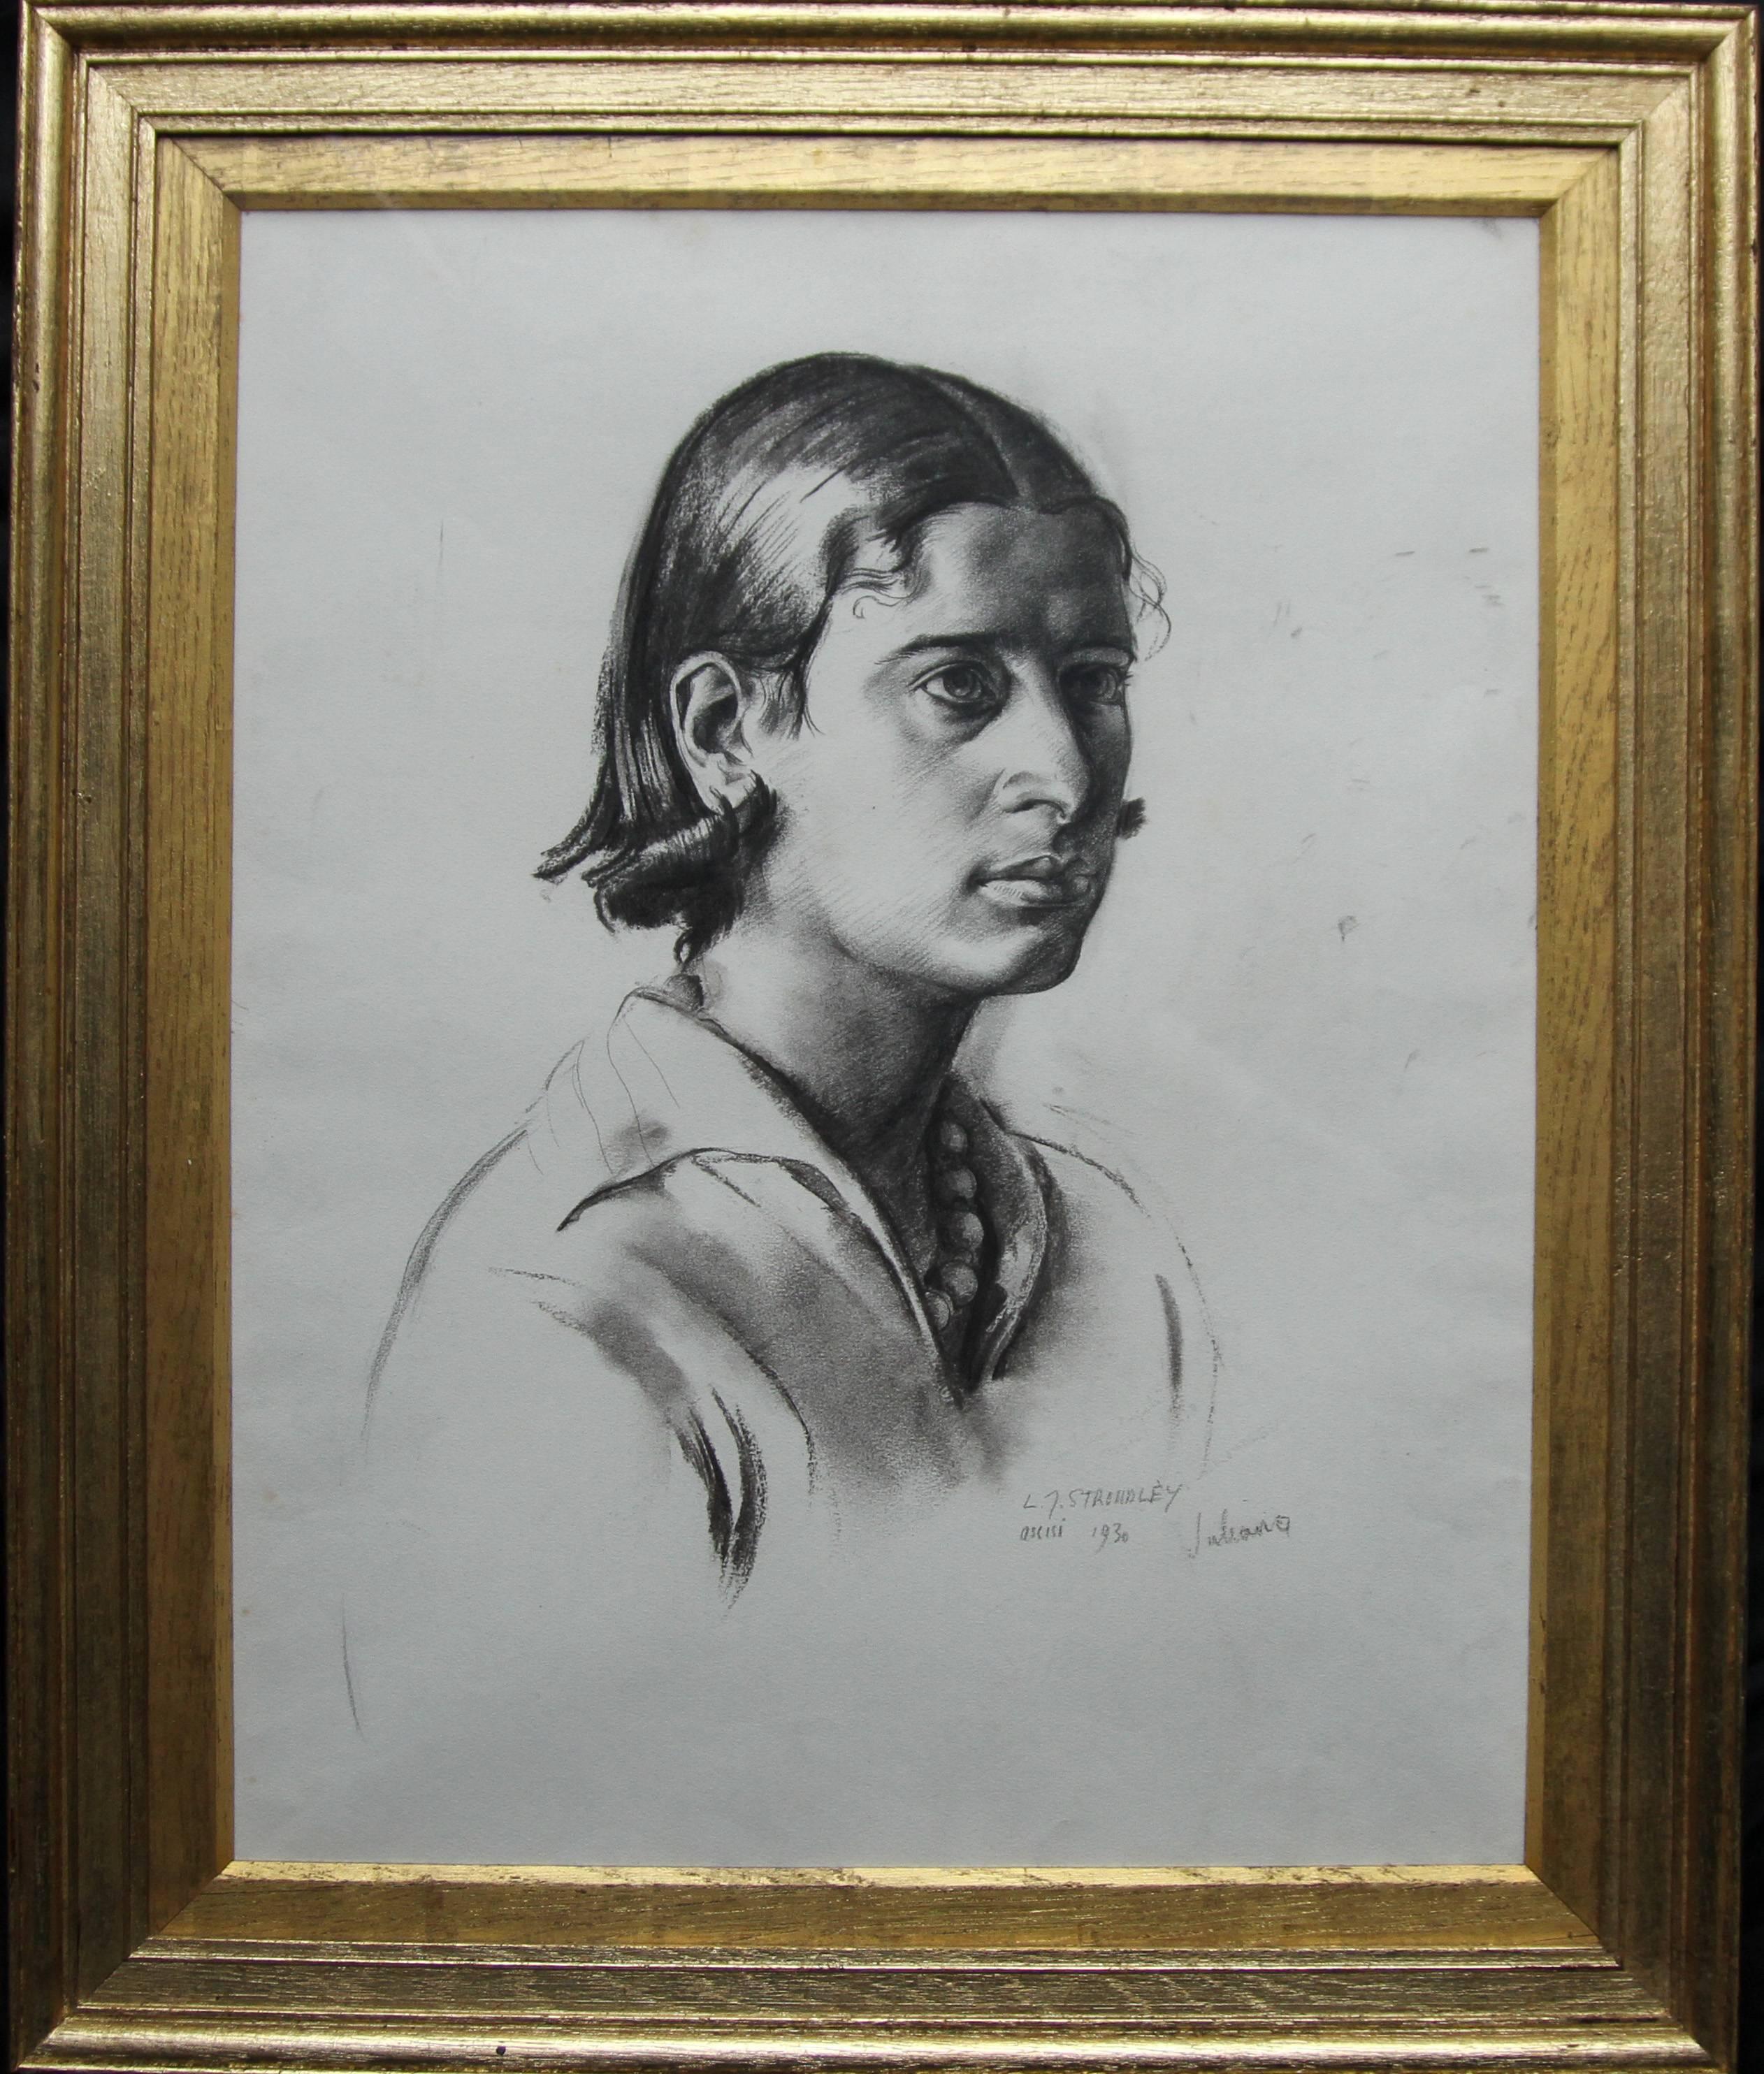 Un grand dessin au fusain et au crayon de l'artiste britannique James Stroudley. Exécuté en 1930, il s'agit d'un exemple étonnant de portrait Art déco des années 1930. Très forte et audacieuse, elle représente le portrait d'une jeune femme et